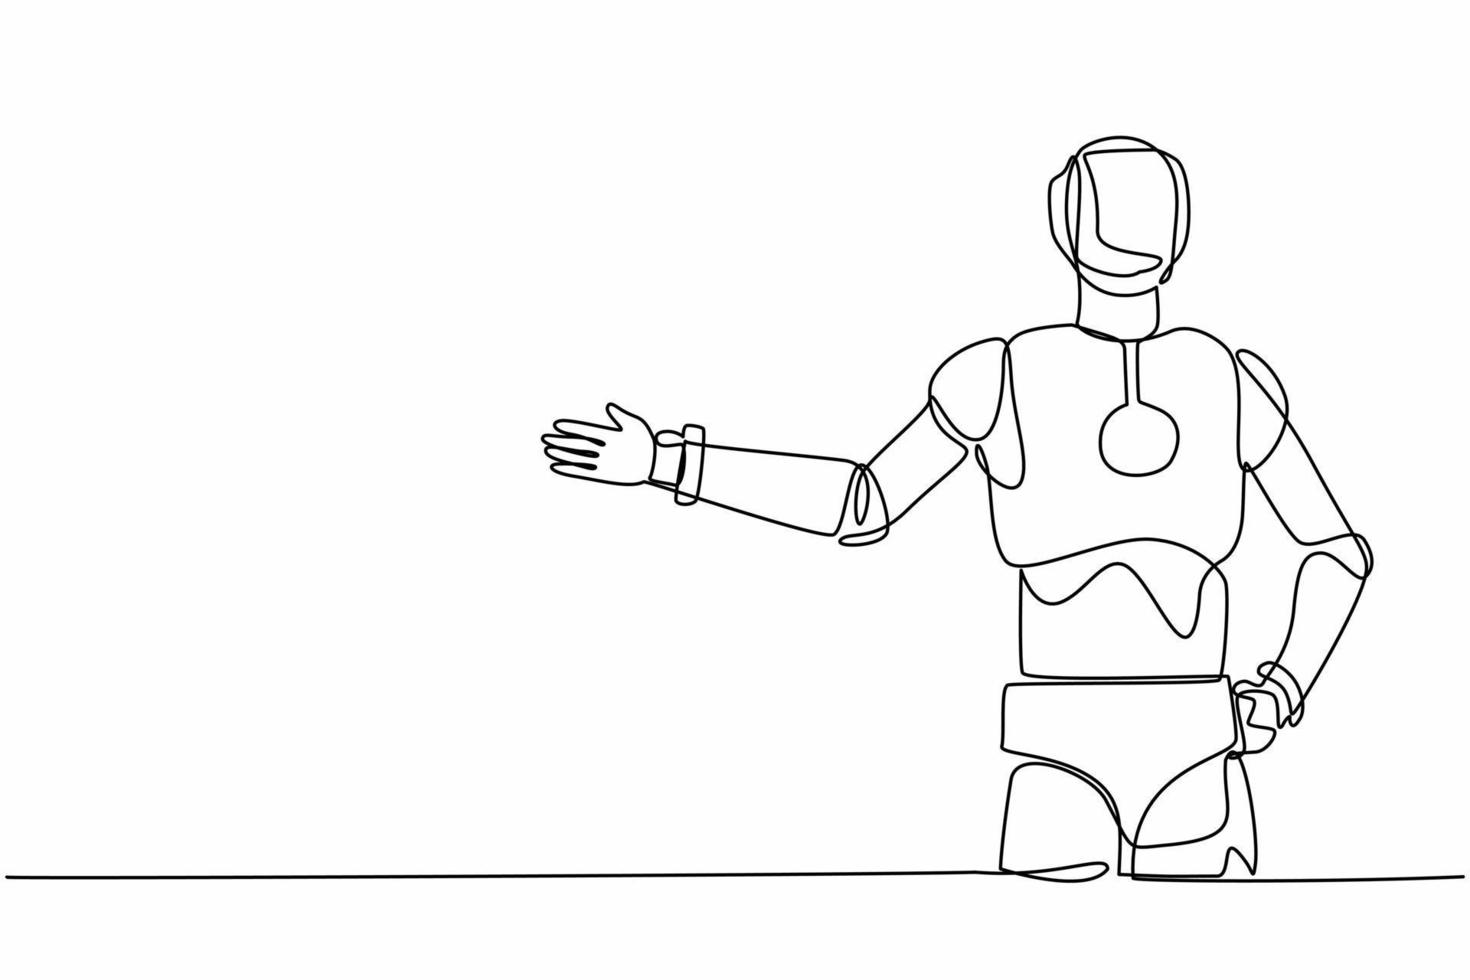 single doorlopend lijn tekening robot staand met tonen iets of presenteren project. robot kunstmatig intelligentie. elektronisch technologie industrie. een lijn grafisch ontwerp vector illustratie